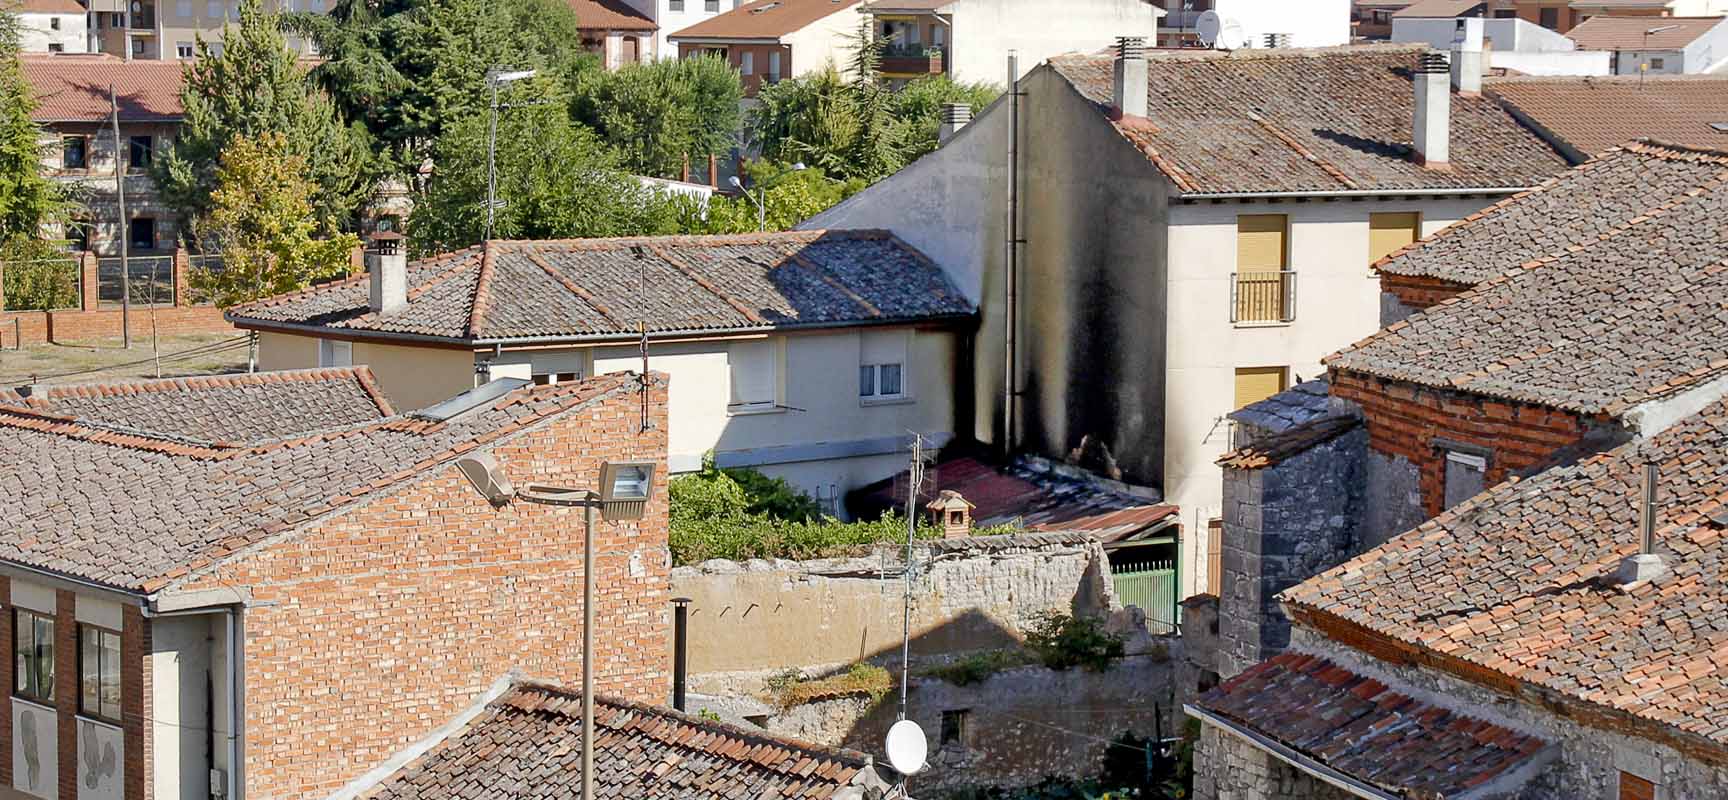 Vista desde la muralla de la zona afectada por el incendio. 